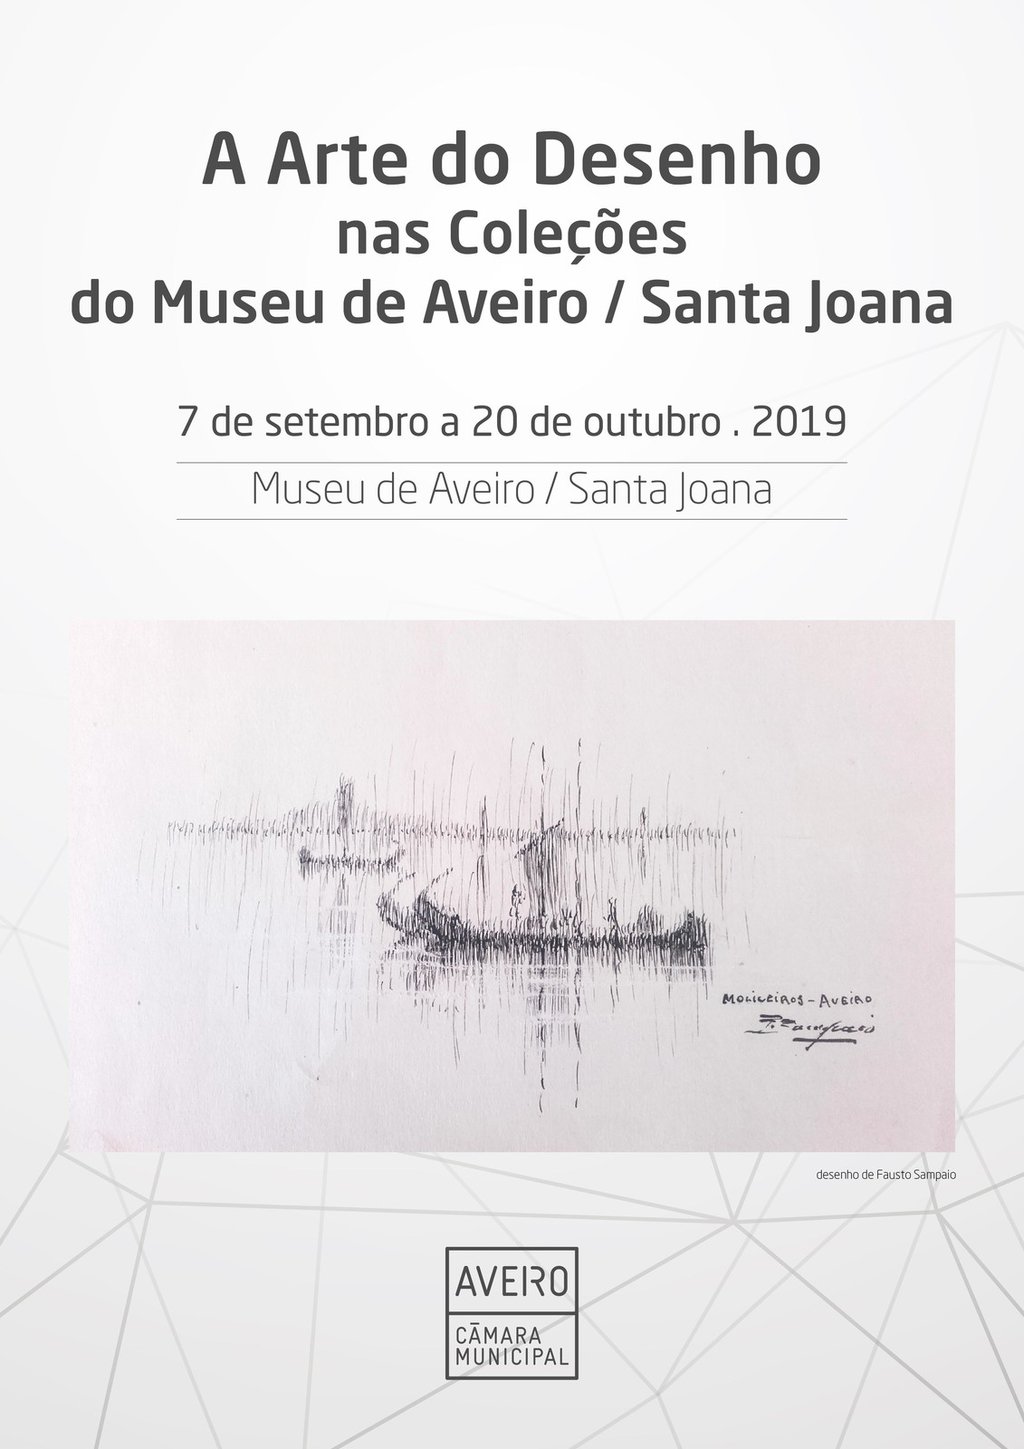 “A ARTE DO DESENHO NAS COLEÇÕES DO MUSEU AVEIRO/SANTA JOANA”